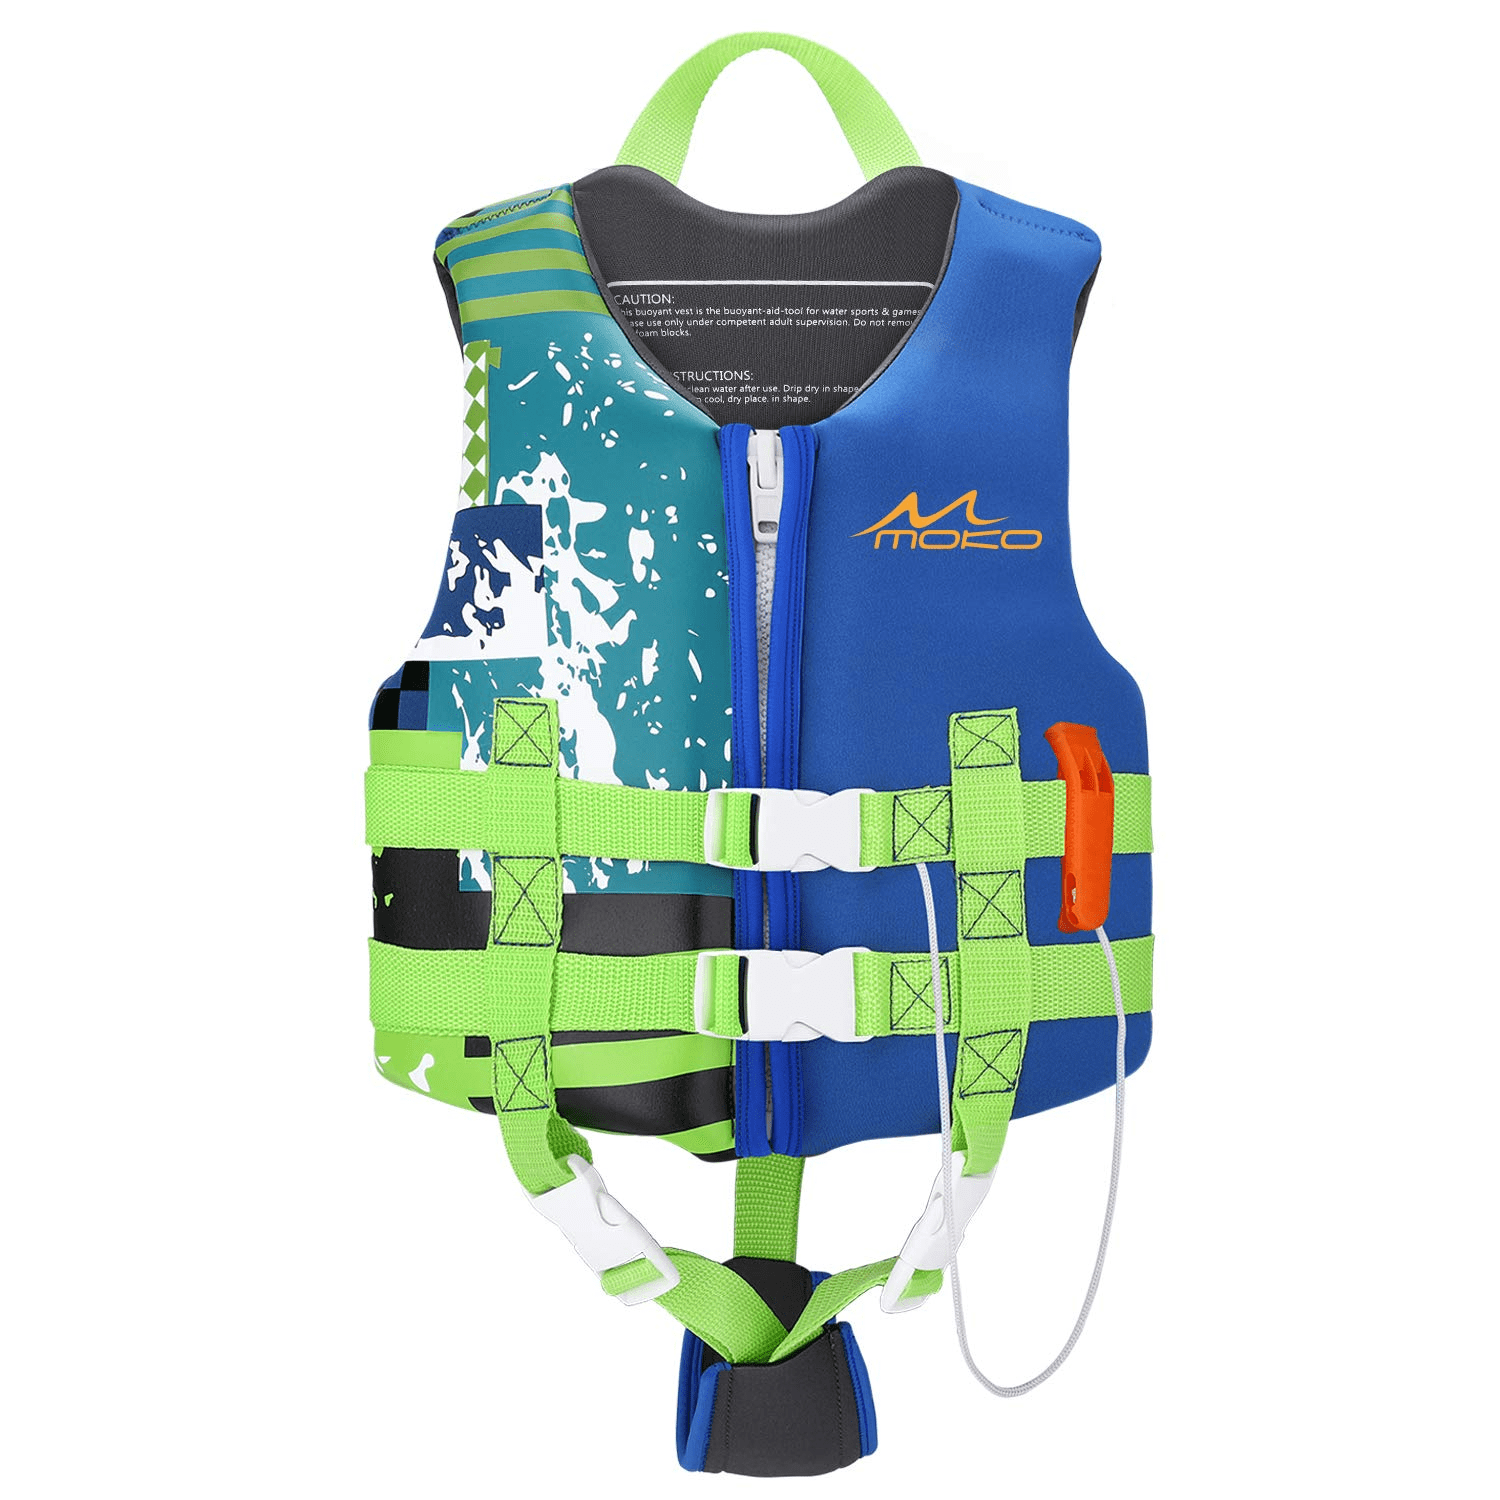 INTEX Aqua Swim Vest  26" x 17.5"  Ages 3-6 NEW 